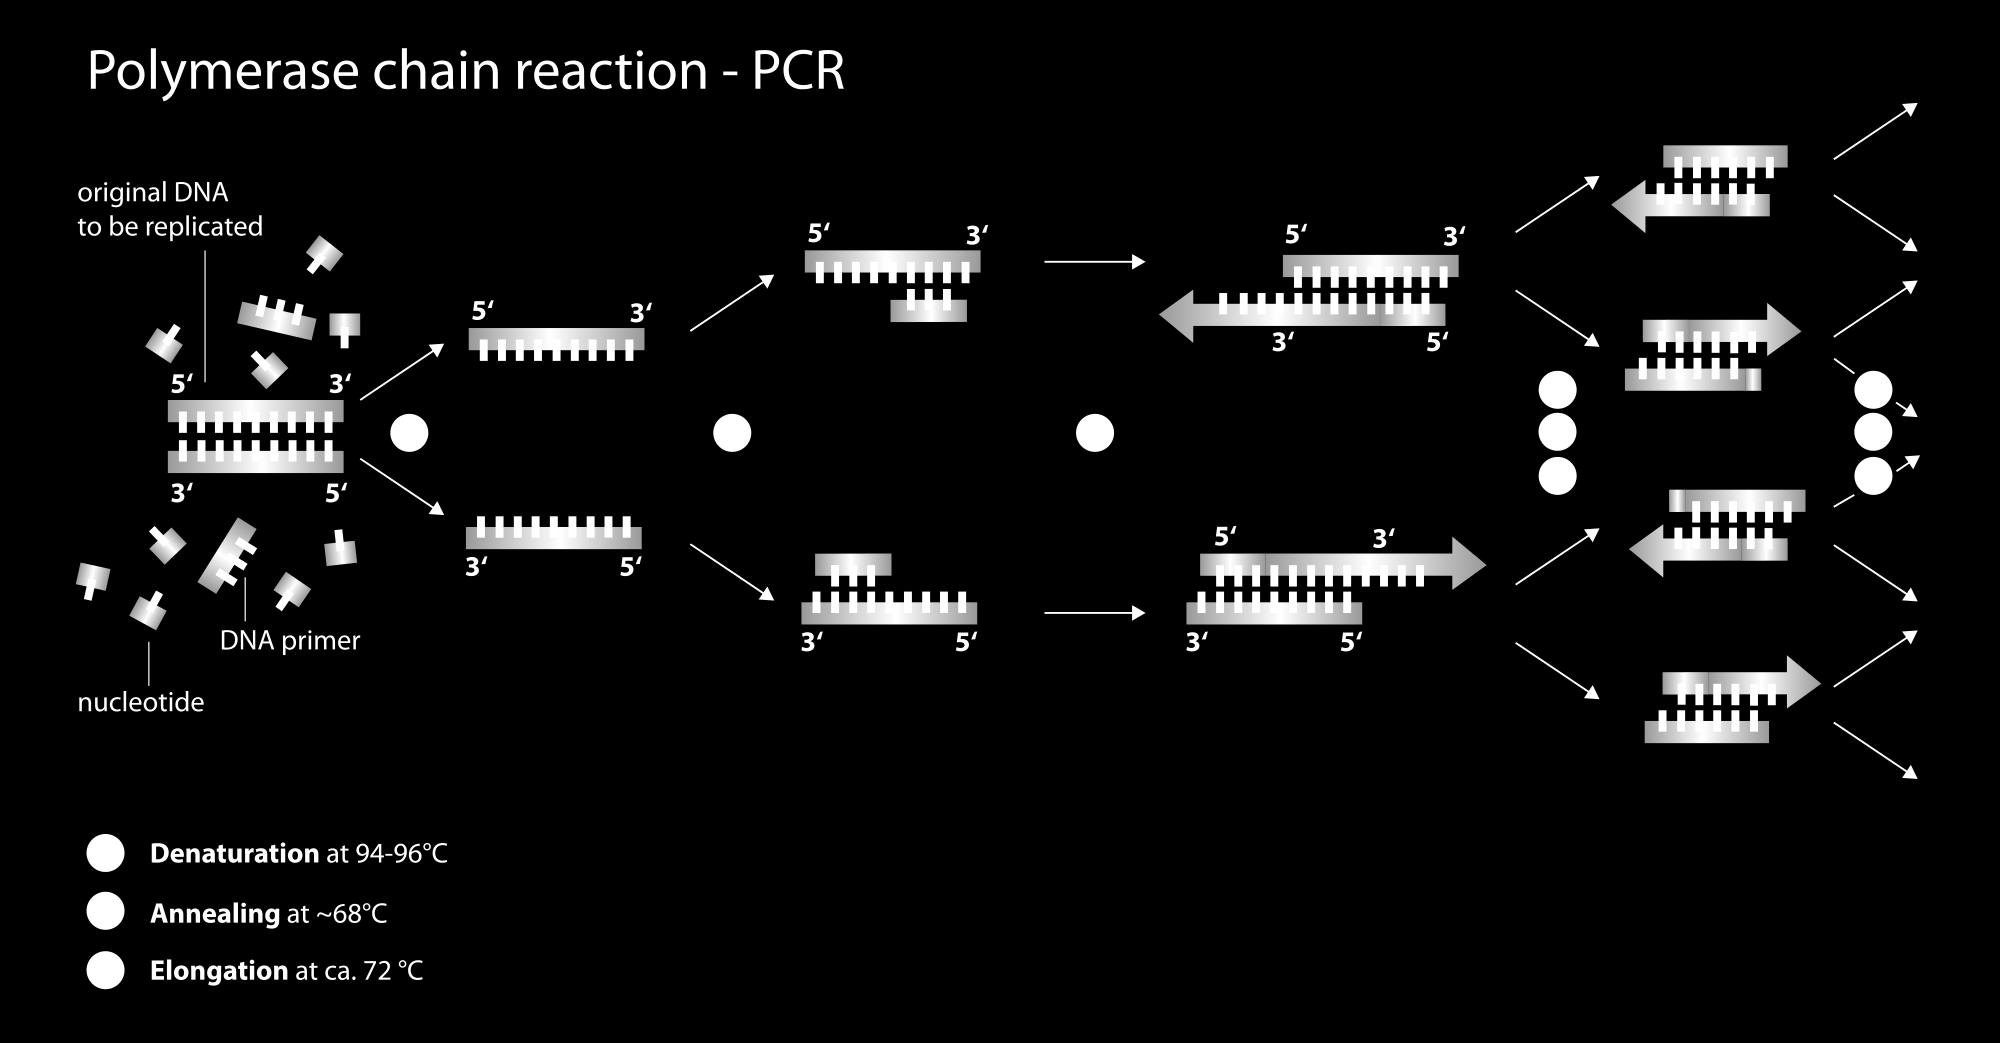 Παγκόσμιοι εκκινητές για την ενίσχυση του μιτοχονδριακού DNA - PCR Εικόνα 2: PCR, by Enzoklop, http://commons.wikimedia.